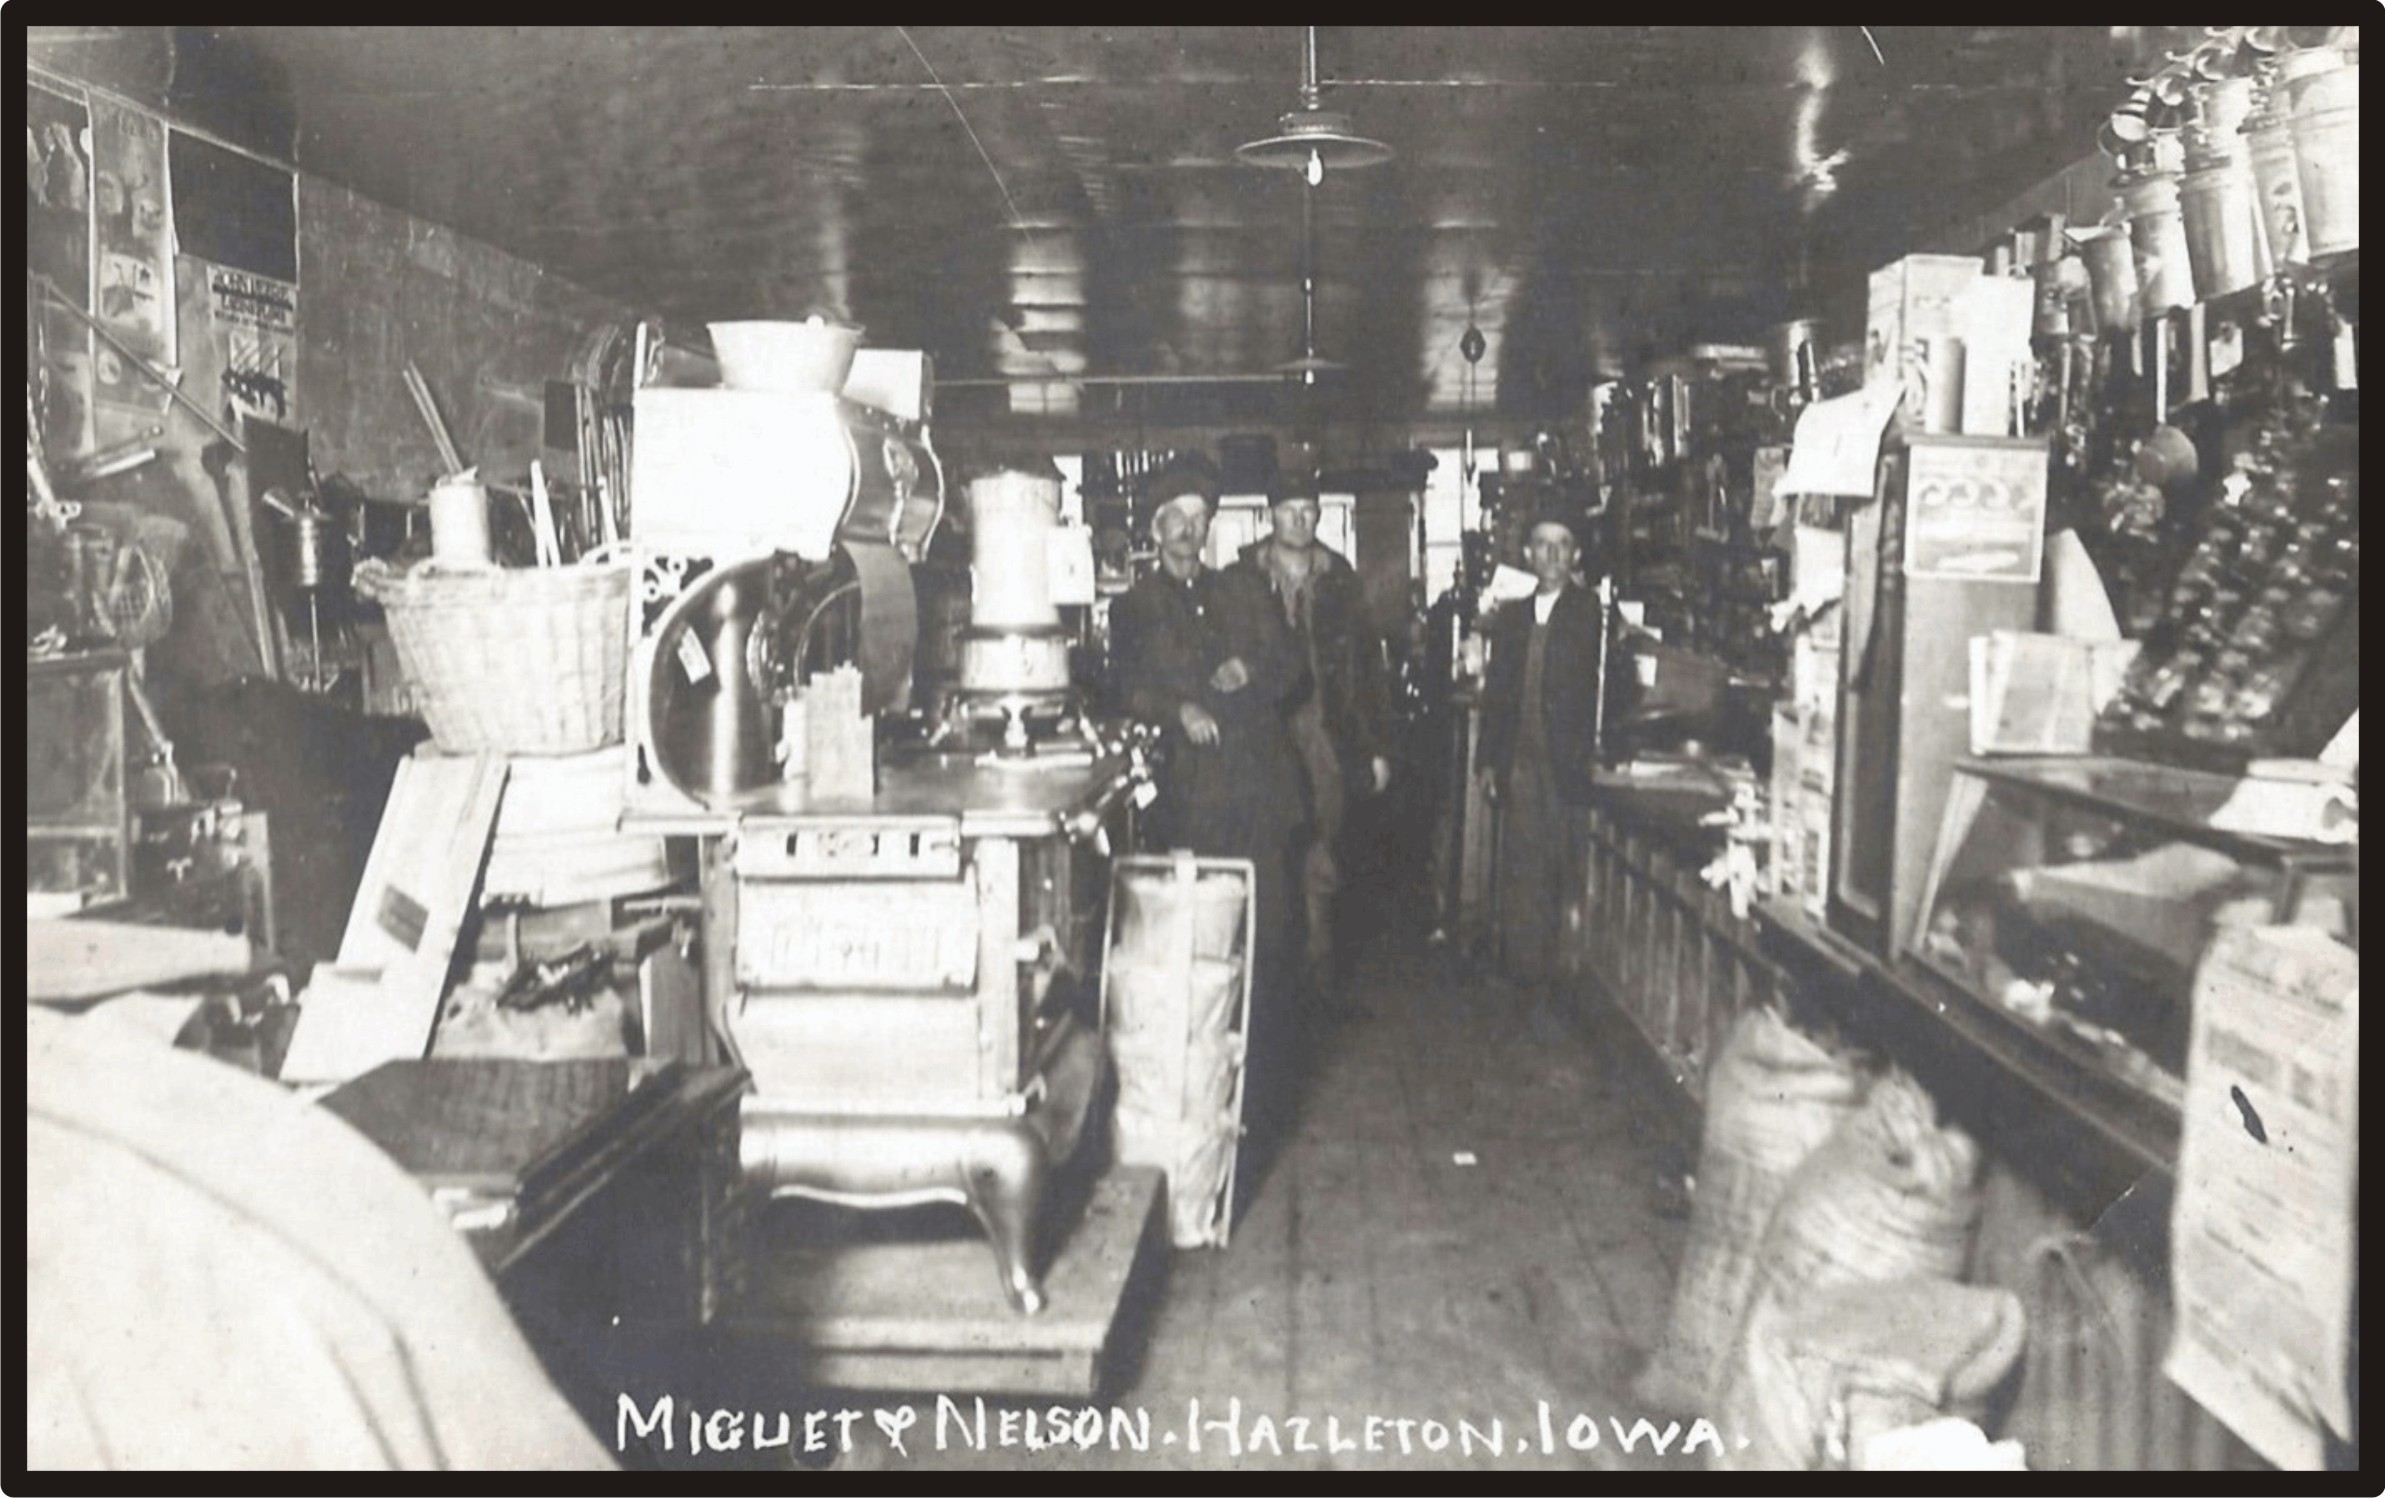 Miguet & Nelson General Merchandise Store - Hazleton, Iowa